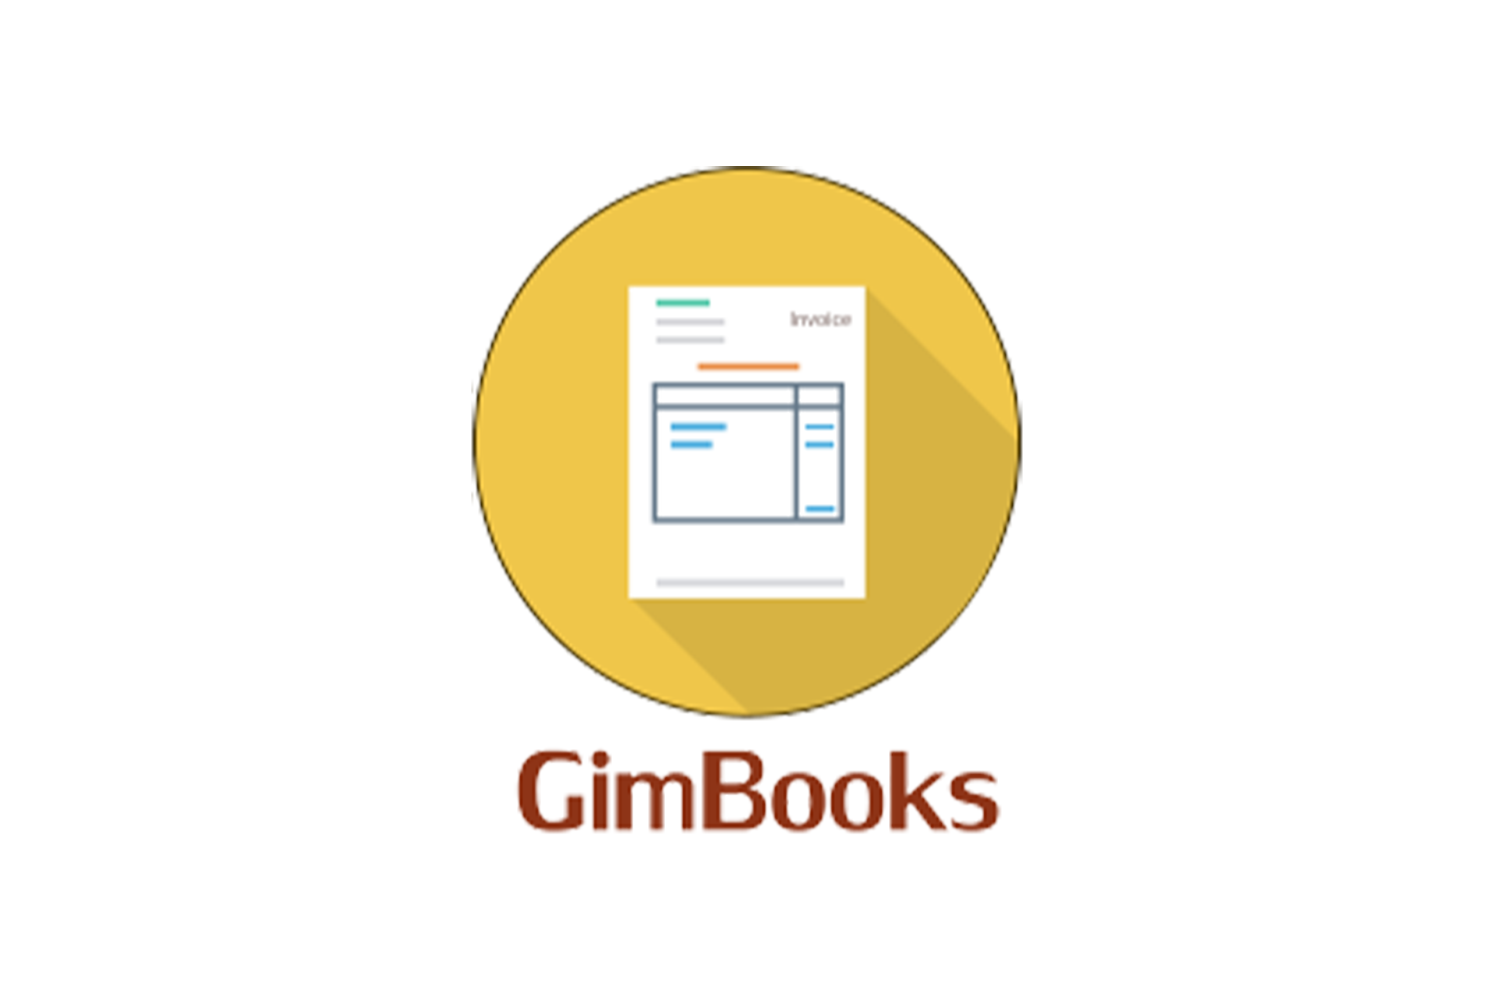 GimBooks logo